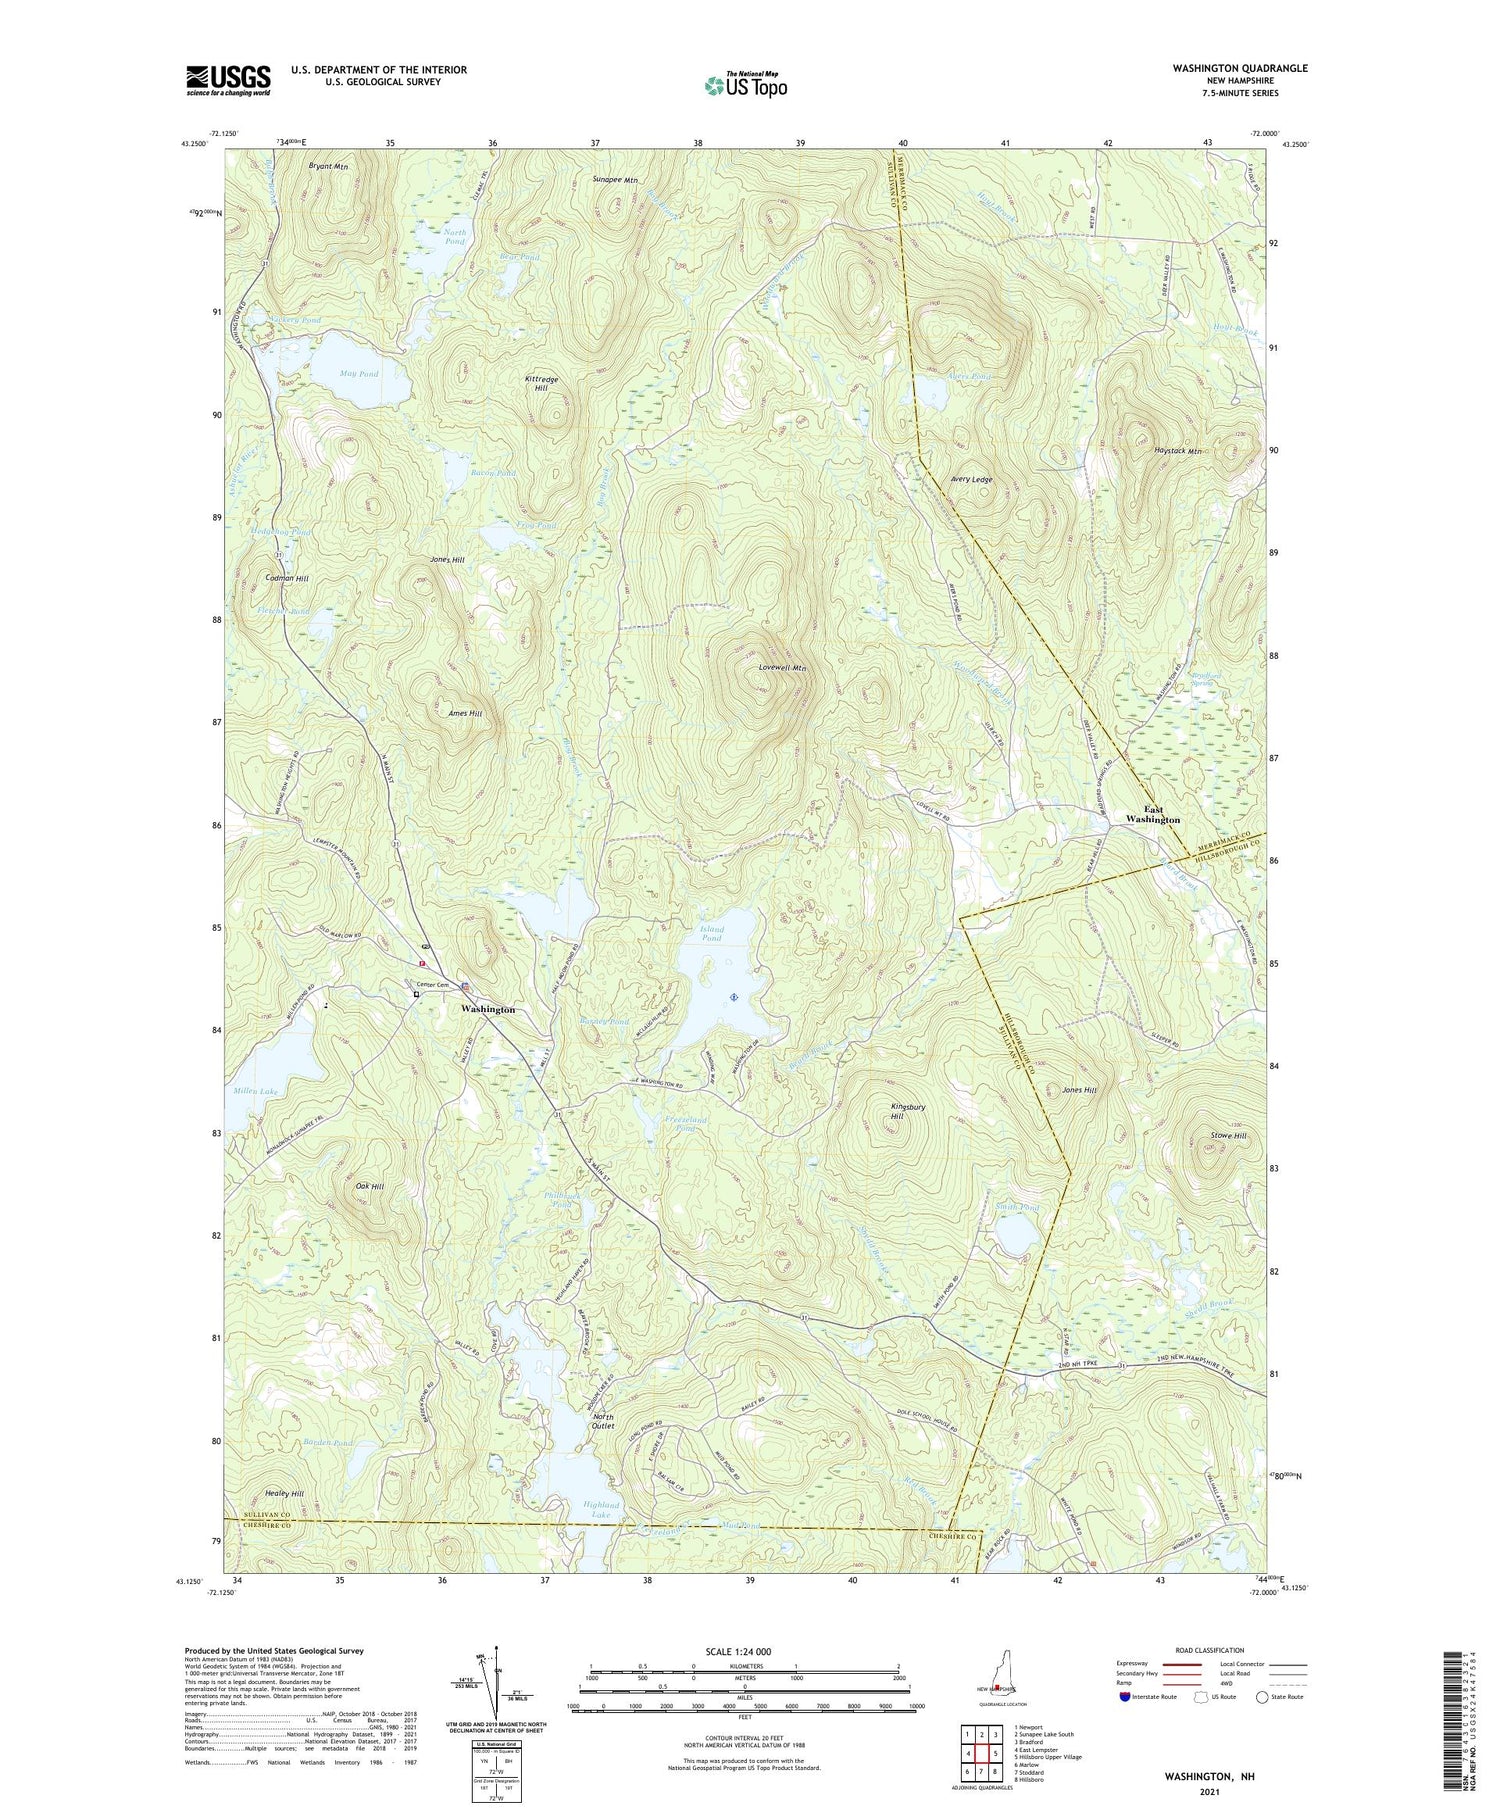 Washington New Hampshire US Topo Map Image